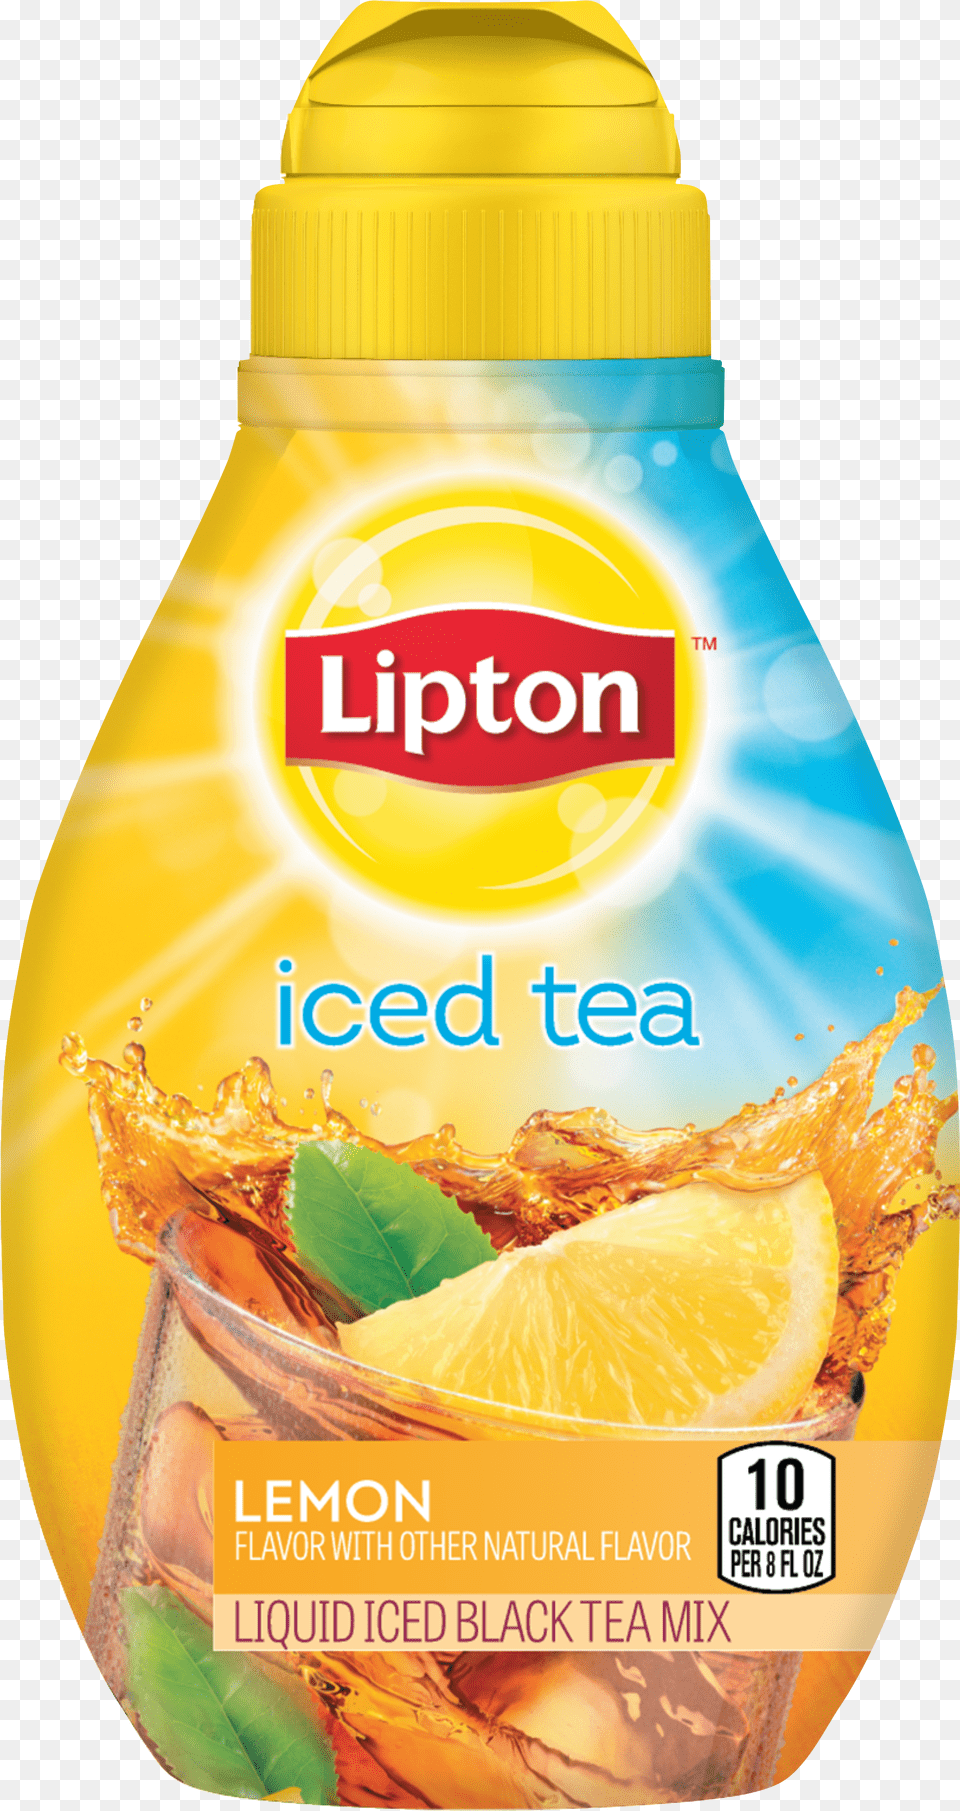 Lipton Liquid Iced Tea Png Image